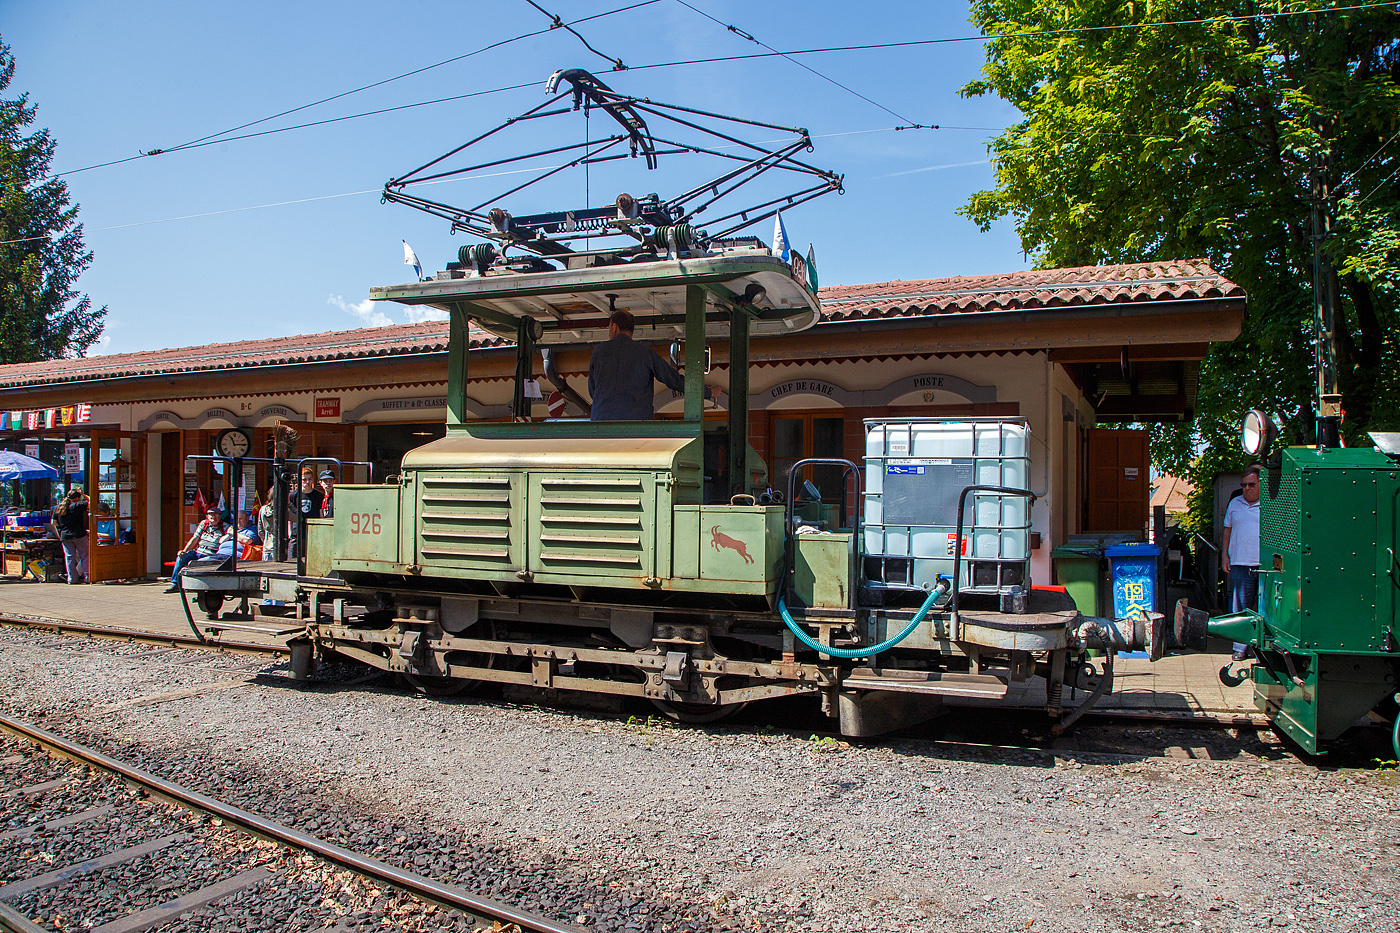 Mit einem 1m³-Wassertank und einer Motorspritze ausgestatte, als Löschzug, der Te 2/2 926 der Museumsbahn Blonay-Chamby, ex VBZ (Verkehrsbetriebe Zürich) Schienentraktor Xe 2/2 – 1926, ex Xe 2/2 – 926, ex StStZ Xe 2/2 – 926, der Museumsbahn Blonay-Chamby am 27.05.2023 im Museum Chaulin. 

Der Te 2/2 Schienentraktor wurde 1935 von der damaligen Städtische Straßenbahn Zürich (StStZ) selbst gebaut, der elektrische Teil ist von der Maschinenfabrik Oerlikon (MFO). Gebaut worden sind, zwische1930 und 1935, drei dieser Rangiermaschinen Nr. 924-926 (ab 1946 in Nr. 1924 bis1926), dabei wurden Untergestell, Elektrik und Motoren von Ce 2/2 Triebwagen der Serie 57-84 (mit markantem Peckham-Untergestell) verwendet. 

Die drei Manövrierwagen von erhielten zur Erleichterung der Fahrtrichtungswechsel von Anfang an einen Pantografen statt des umständlichen Lyrabügels. Die Rangierer fügten in den Depots den Triebwagen für die Hauptverkehrszeit die Beiwagen zu. Die Führerstände waren längs eingebaut, mit freier Sicht auf die Kupplungen, so konnte man mit ihnen sozusagen millimetergenau anfahren. Ihr grüner Anstrich und das charakteristische Fahrverhalten trugen ihnen den Spitznamen „Laubfrosch“ ein.

Speziell für Zürich war die große Flotte von Rangierfahrzeugen. Diese hatten die Aufgabe, für die Stoßzeit Verstärkungswagen beizustellen und danach wieder von den Tramzügen abzuziehen. Dazu gehörten auch Fahrten zwischen dem zugeteilten Depot und den Bereitstellungsgleisen an Wendeschleifen. Ende der 1960ziger Jahre wurde, durch die große Zahl angeschafften Mirage-Gelenkzüge, die Flotte von 24 Stück Rangierfahrzeugen überflüssig. Das Beistellen und Abziehen von Tramanhängern vor und nach der Stoßzeit war nun überflüssig. So war 1969 war ihre Zeit abgelaufen. Während die beiden Xe 2/2 1924 und 1025 Stück abgebrochen wurden, übergab die Stadt Zürich Xe 2/2 1926 an die eben im Aufbau begriffene Museumsbahn Blonay - Chamby BC. Dort leistete das gut unterhaltene und sehr bewegliche Triebfahrzeug wertvolle Dienste bei der Wiederinbetriebnahme der Strecke und beim Bau des Depots. Heute wird der „Laubfrosch“ mit seiner alten Zürcher Nummer 926 bestimmungsgemäß als Rangierfahrzeug auf dem Depotareal der BC benutzt. Hier kann der Laubfrosch seine Stärken ausspielen. Für den Einsatz auf der Museumsbahn musste Xe 2/2 926 die +GF+-Kupplung gegen eine herkömmliche Mittelpufferkupplung tauschen. Um den Betrieb unter der Spannung von 1000 V DB (MOB-GFM) zu ermöglichen, wurde ein zusätzlicher Widerstand montiert, die Straßenbahn Zürich fuhrt ja unter 700 V DC. Trotz der zusätzlichen Widerstände leistet er sehr gute Arbeitet bei der BC. Bei der Museumsbahn Blonay–Chamby tägt der Te 926 nicht den Spitznamen „Laubfrosch“ sondern „Le Bouc“ (Der Bock).

Hier wurde das Fahrzeug präventiv als Löschfahrzeug, für evtl. Bekämpfung von Böschungsbränden nach Funkenwurf durch die Dampflokomotive, vorgehalten. Gelegentlich rückt die BC Xe 2/2 926 mit dem Sprengwagen Xe 2/2 1, ex Straßenbahn Biel aus, der noch nicht wieder mit Fahrmotoren ausgerüstet ist.

TECHNISCHE DATEN:
Spurweite: 1.000 mm (Meterspur)
Gewicht: 9,3 t
Höchstgeschwindigkeit: 36 Km/h
Leistung: 2 x 44 kW = 88 kW (120 PS)
Triebraddurchmesser: 840 mm (neu)
Getriebeübersetzung: 1:4,277
Spannung: (ursprünglich) 700 V DC, bei der BC 1000 V DC

Quellen: BC, Drehscheibe
